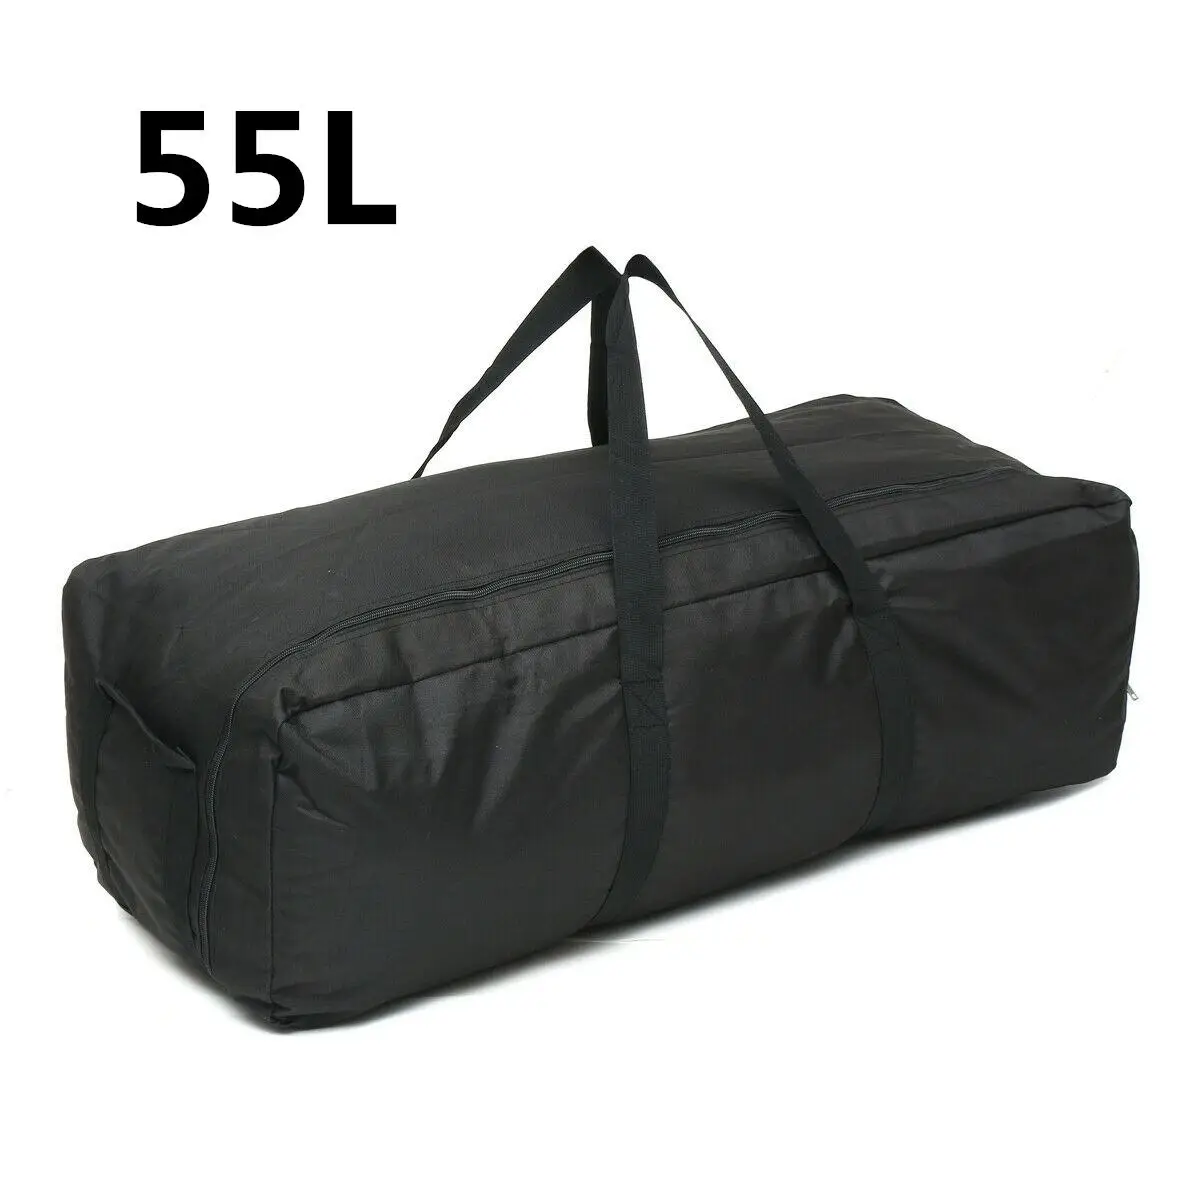 Водонепроницаемая спортивная сумка для мужчин и женщин, рюкзак на плечо, сумки для фитнеса, сумка для путешествий в тренажерном зале, сумка для сна на открытом воздухе, портативные спортивные сумки - Цвет: 55L